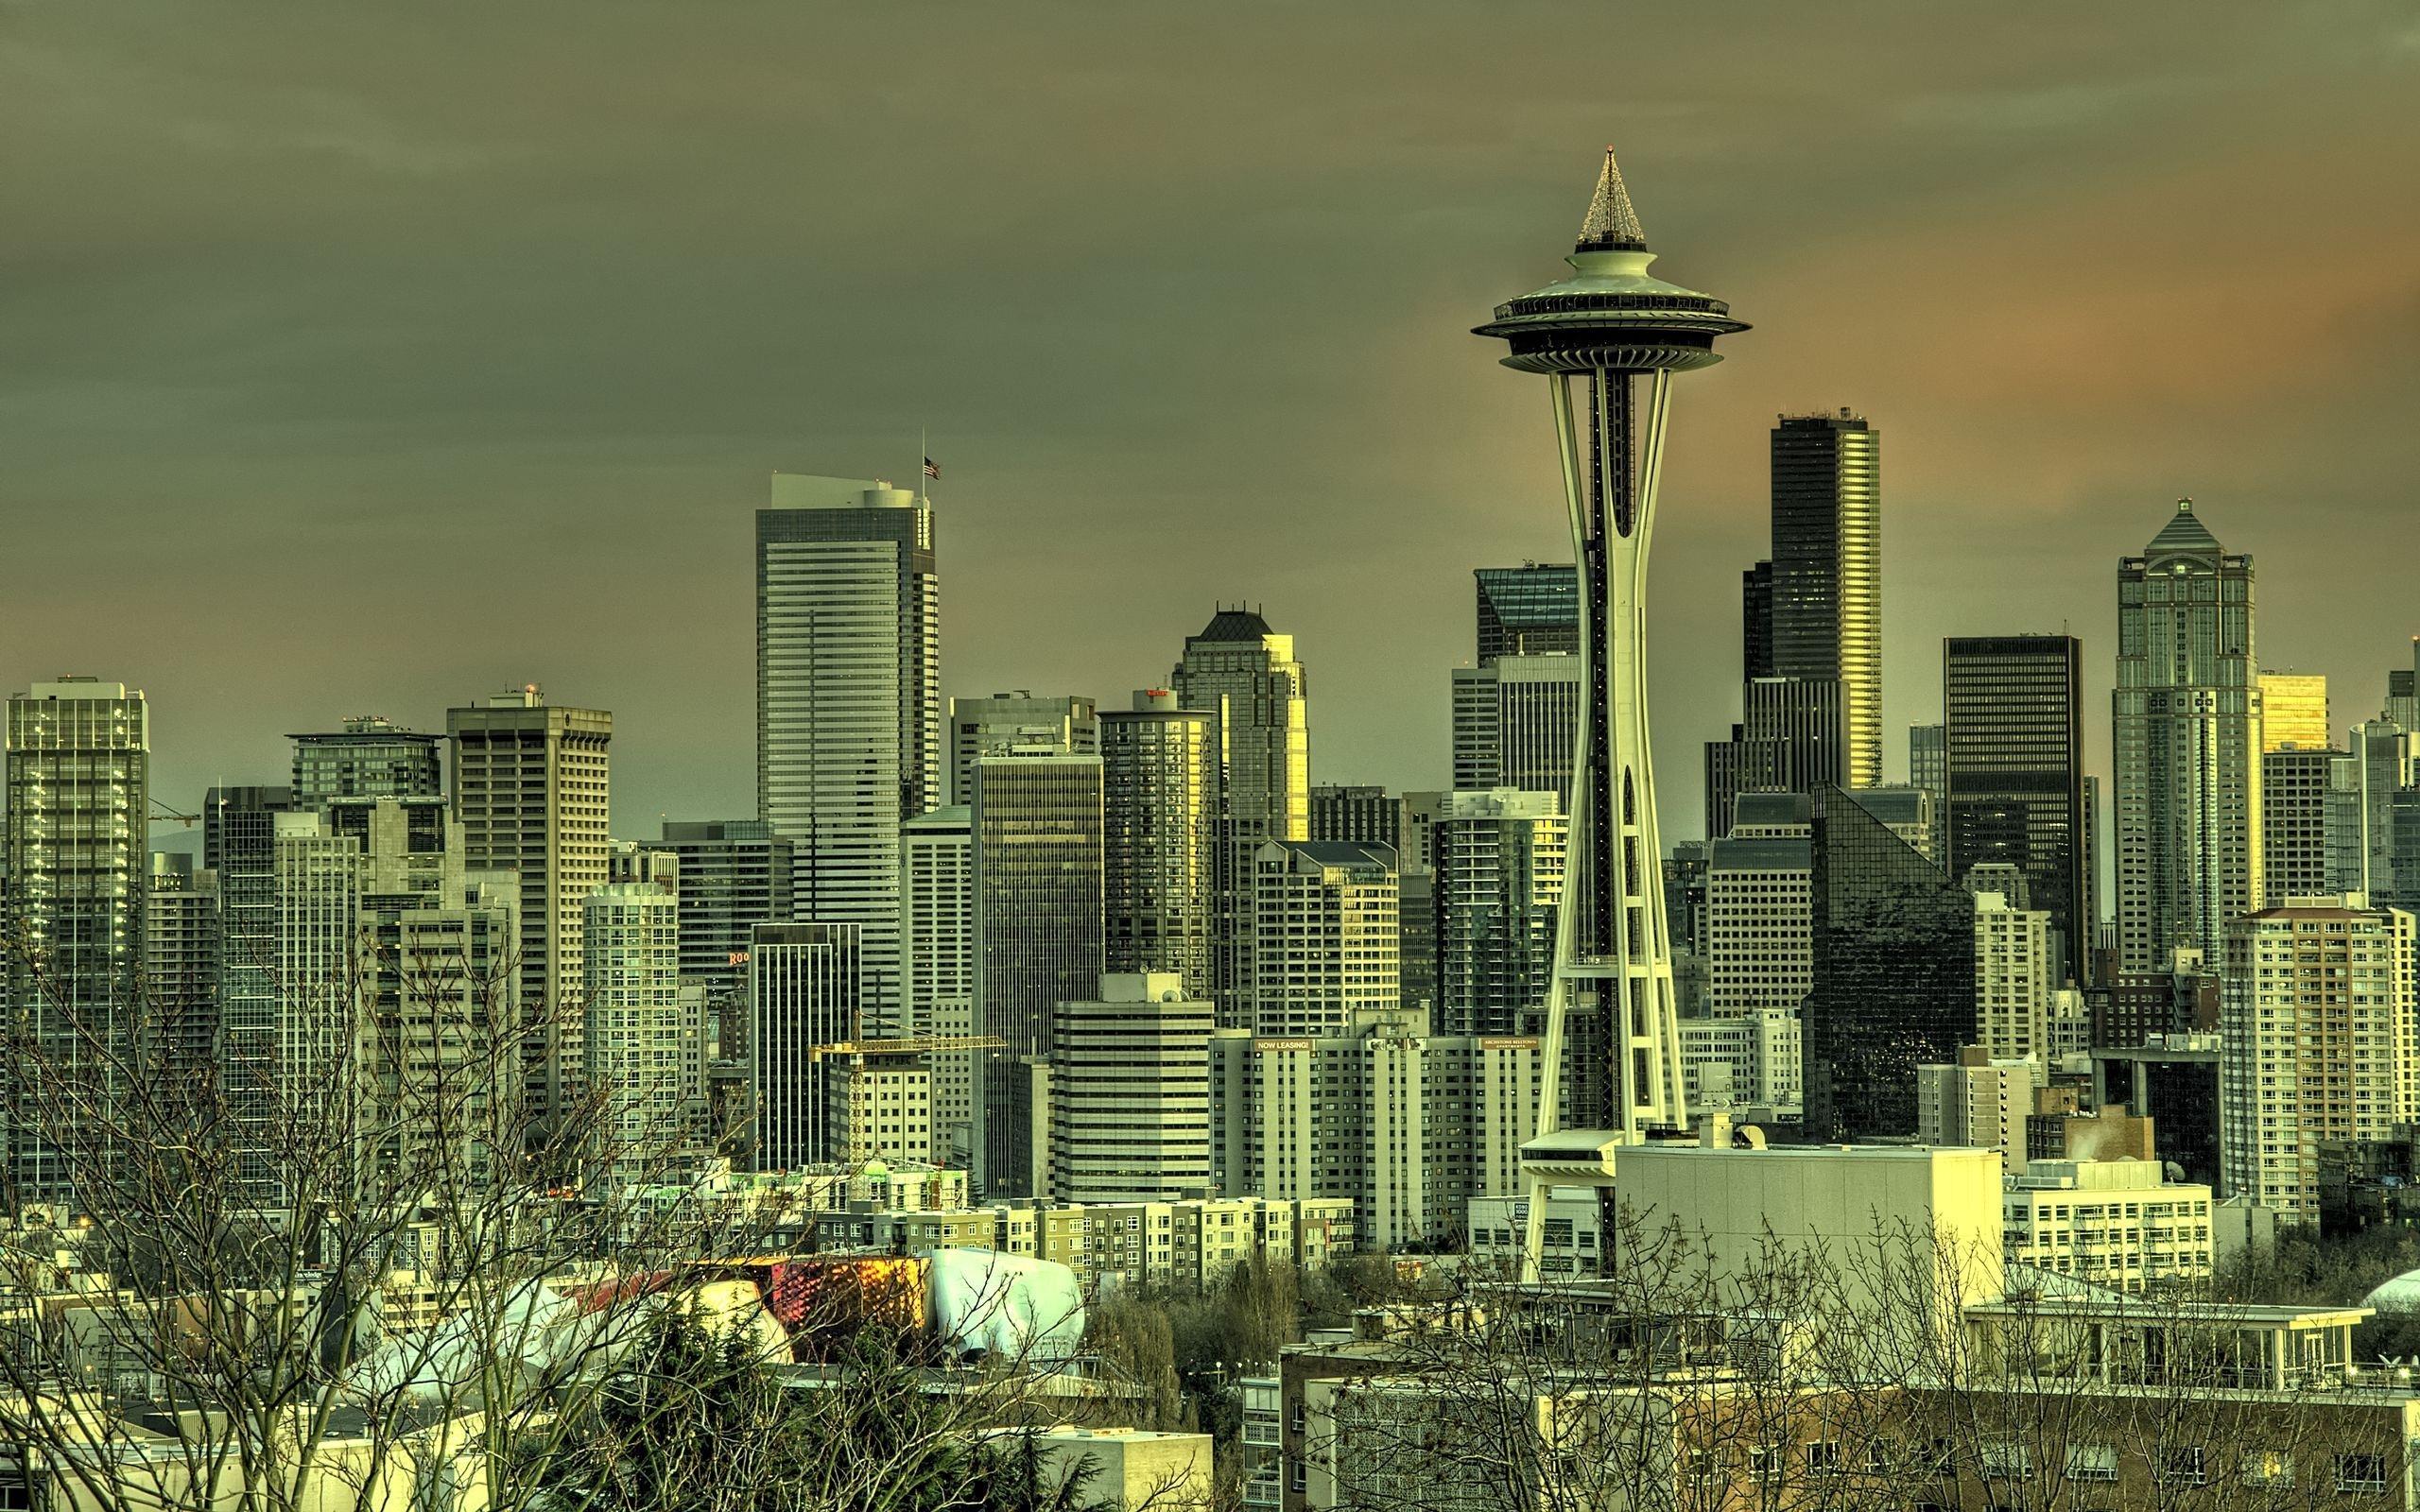 7 Best Seattle wallpaper ideas  seattle seattle wallpaper seattle city